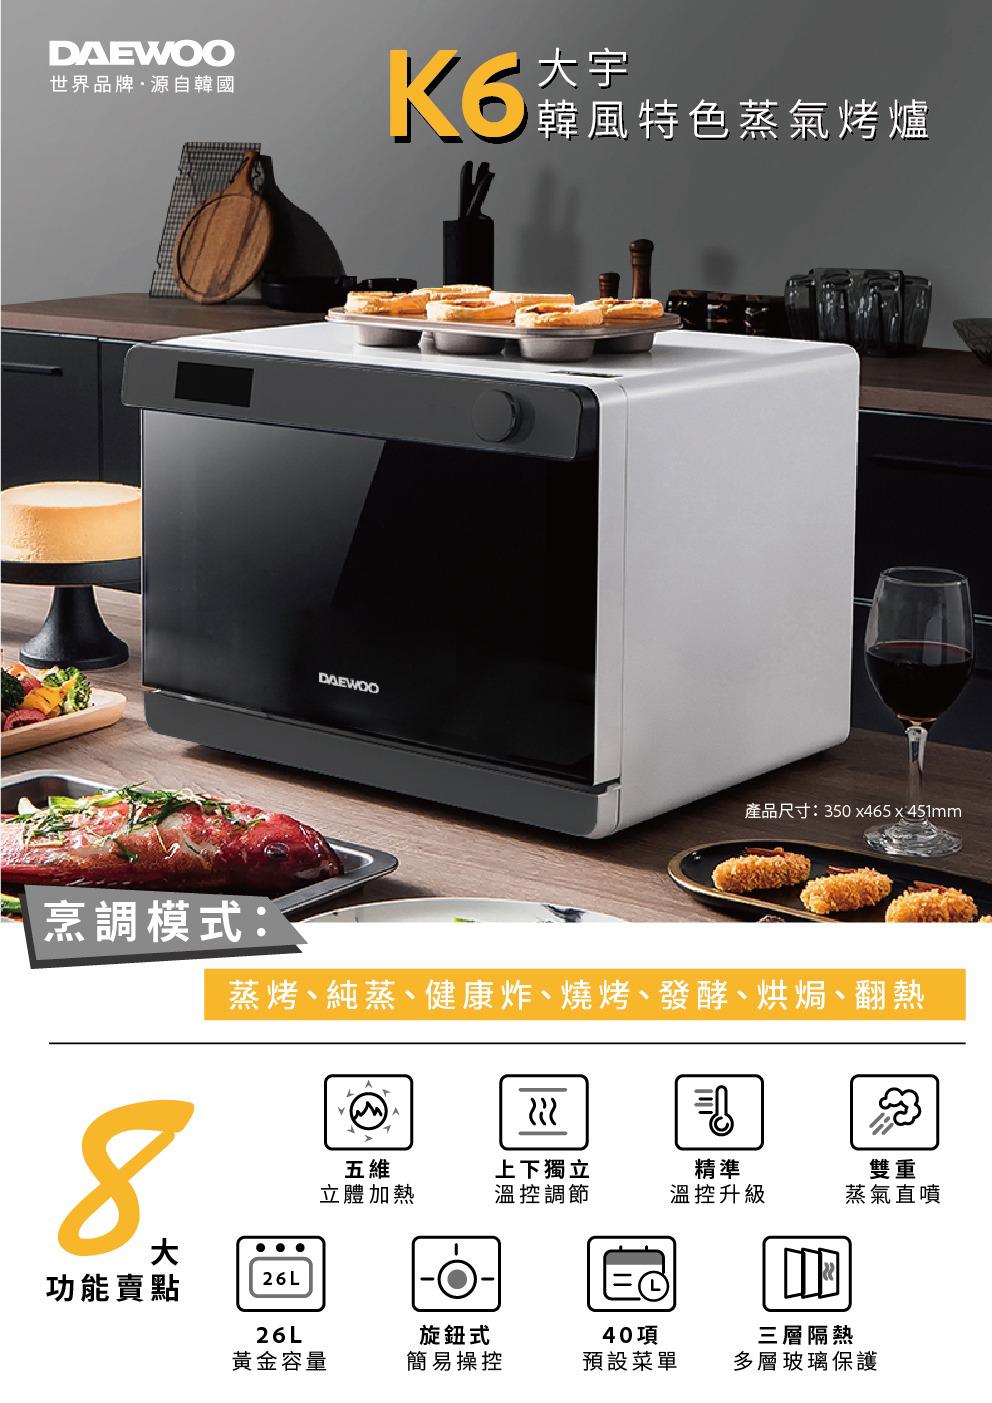 【已停產】Daewoo K6 26公升 座檯式蒸烤爐